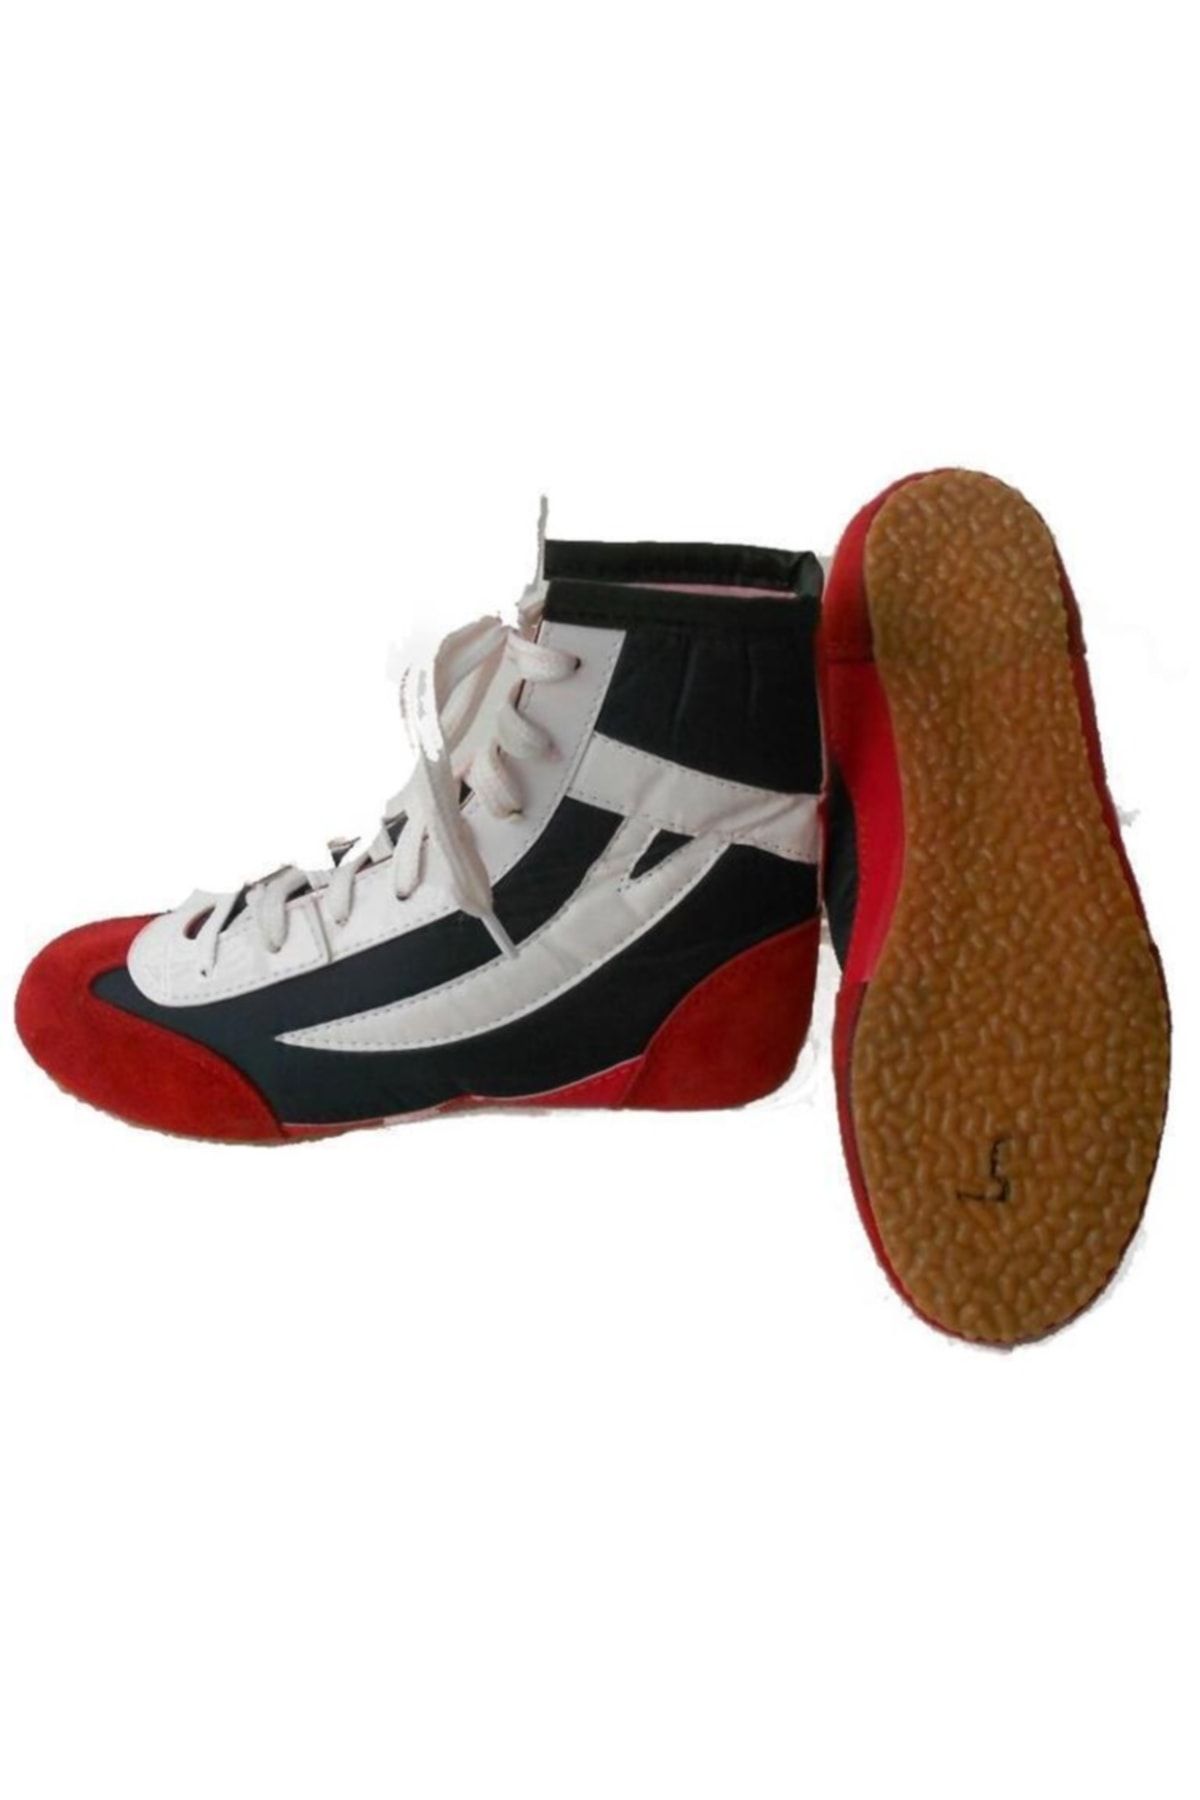 Clifton Güreş Ayakkabısı Boks Ayakkabısı (45 Numara )